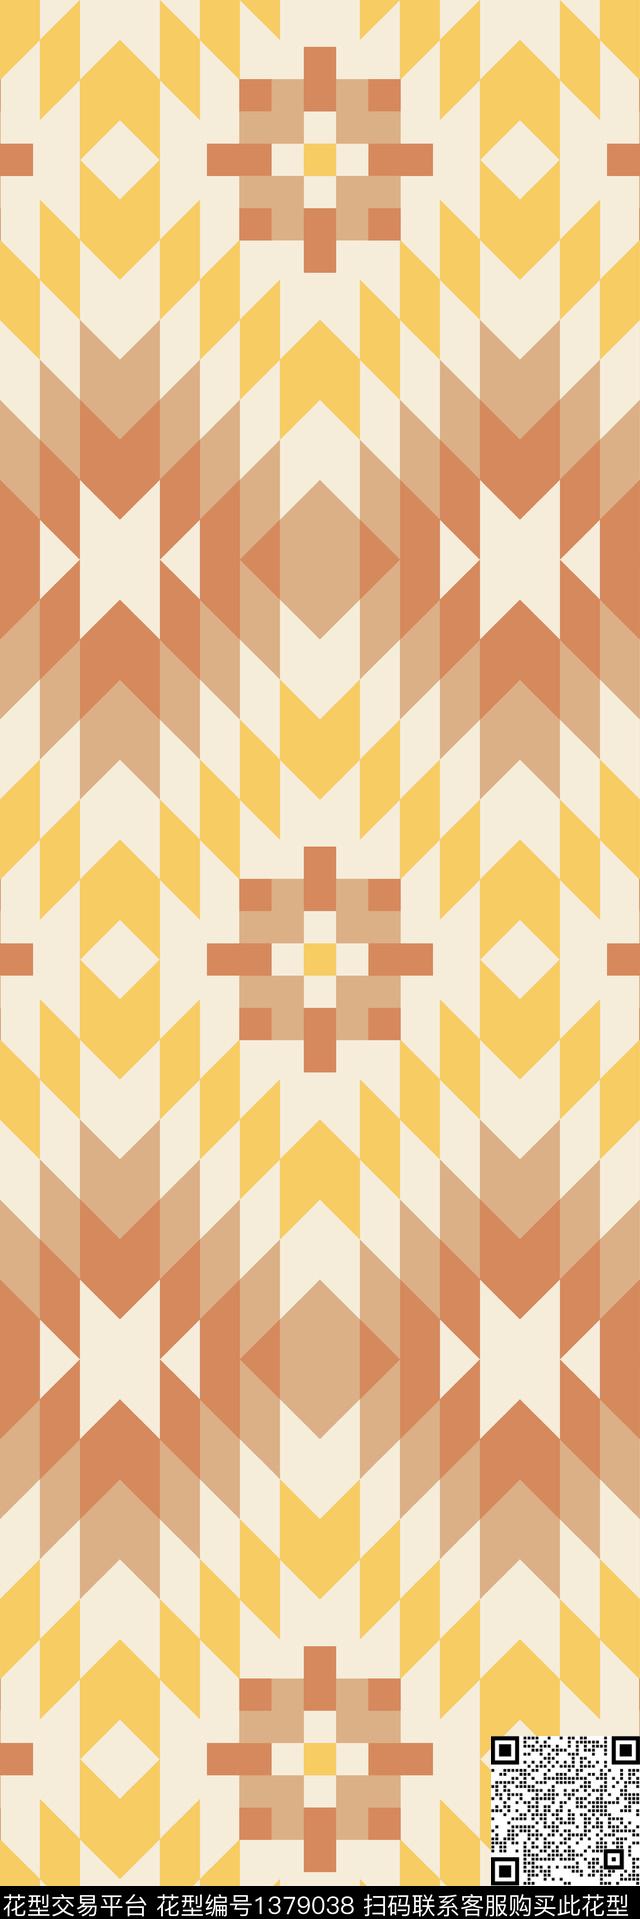 羊绒长巾2.jpg - 1379038 - 几何 格子 抽象 - 传统印花花型 － 长巾花型设计 － 瓦栏